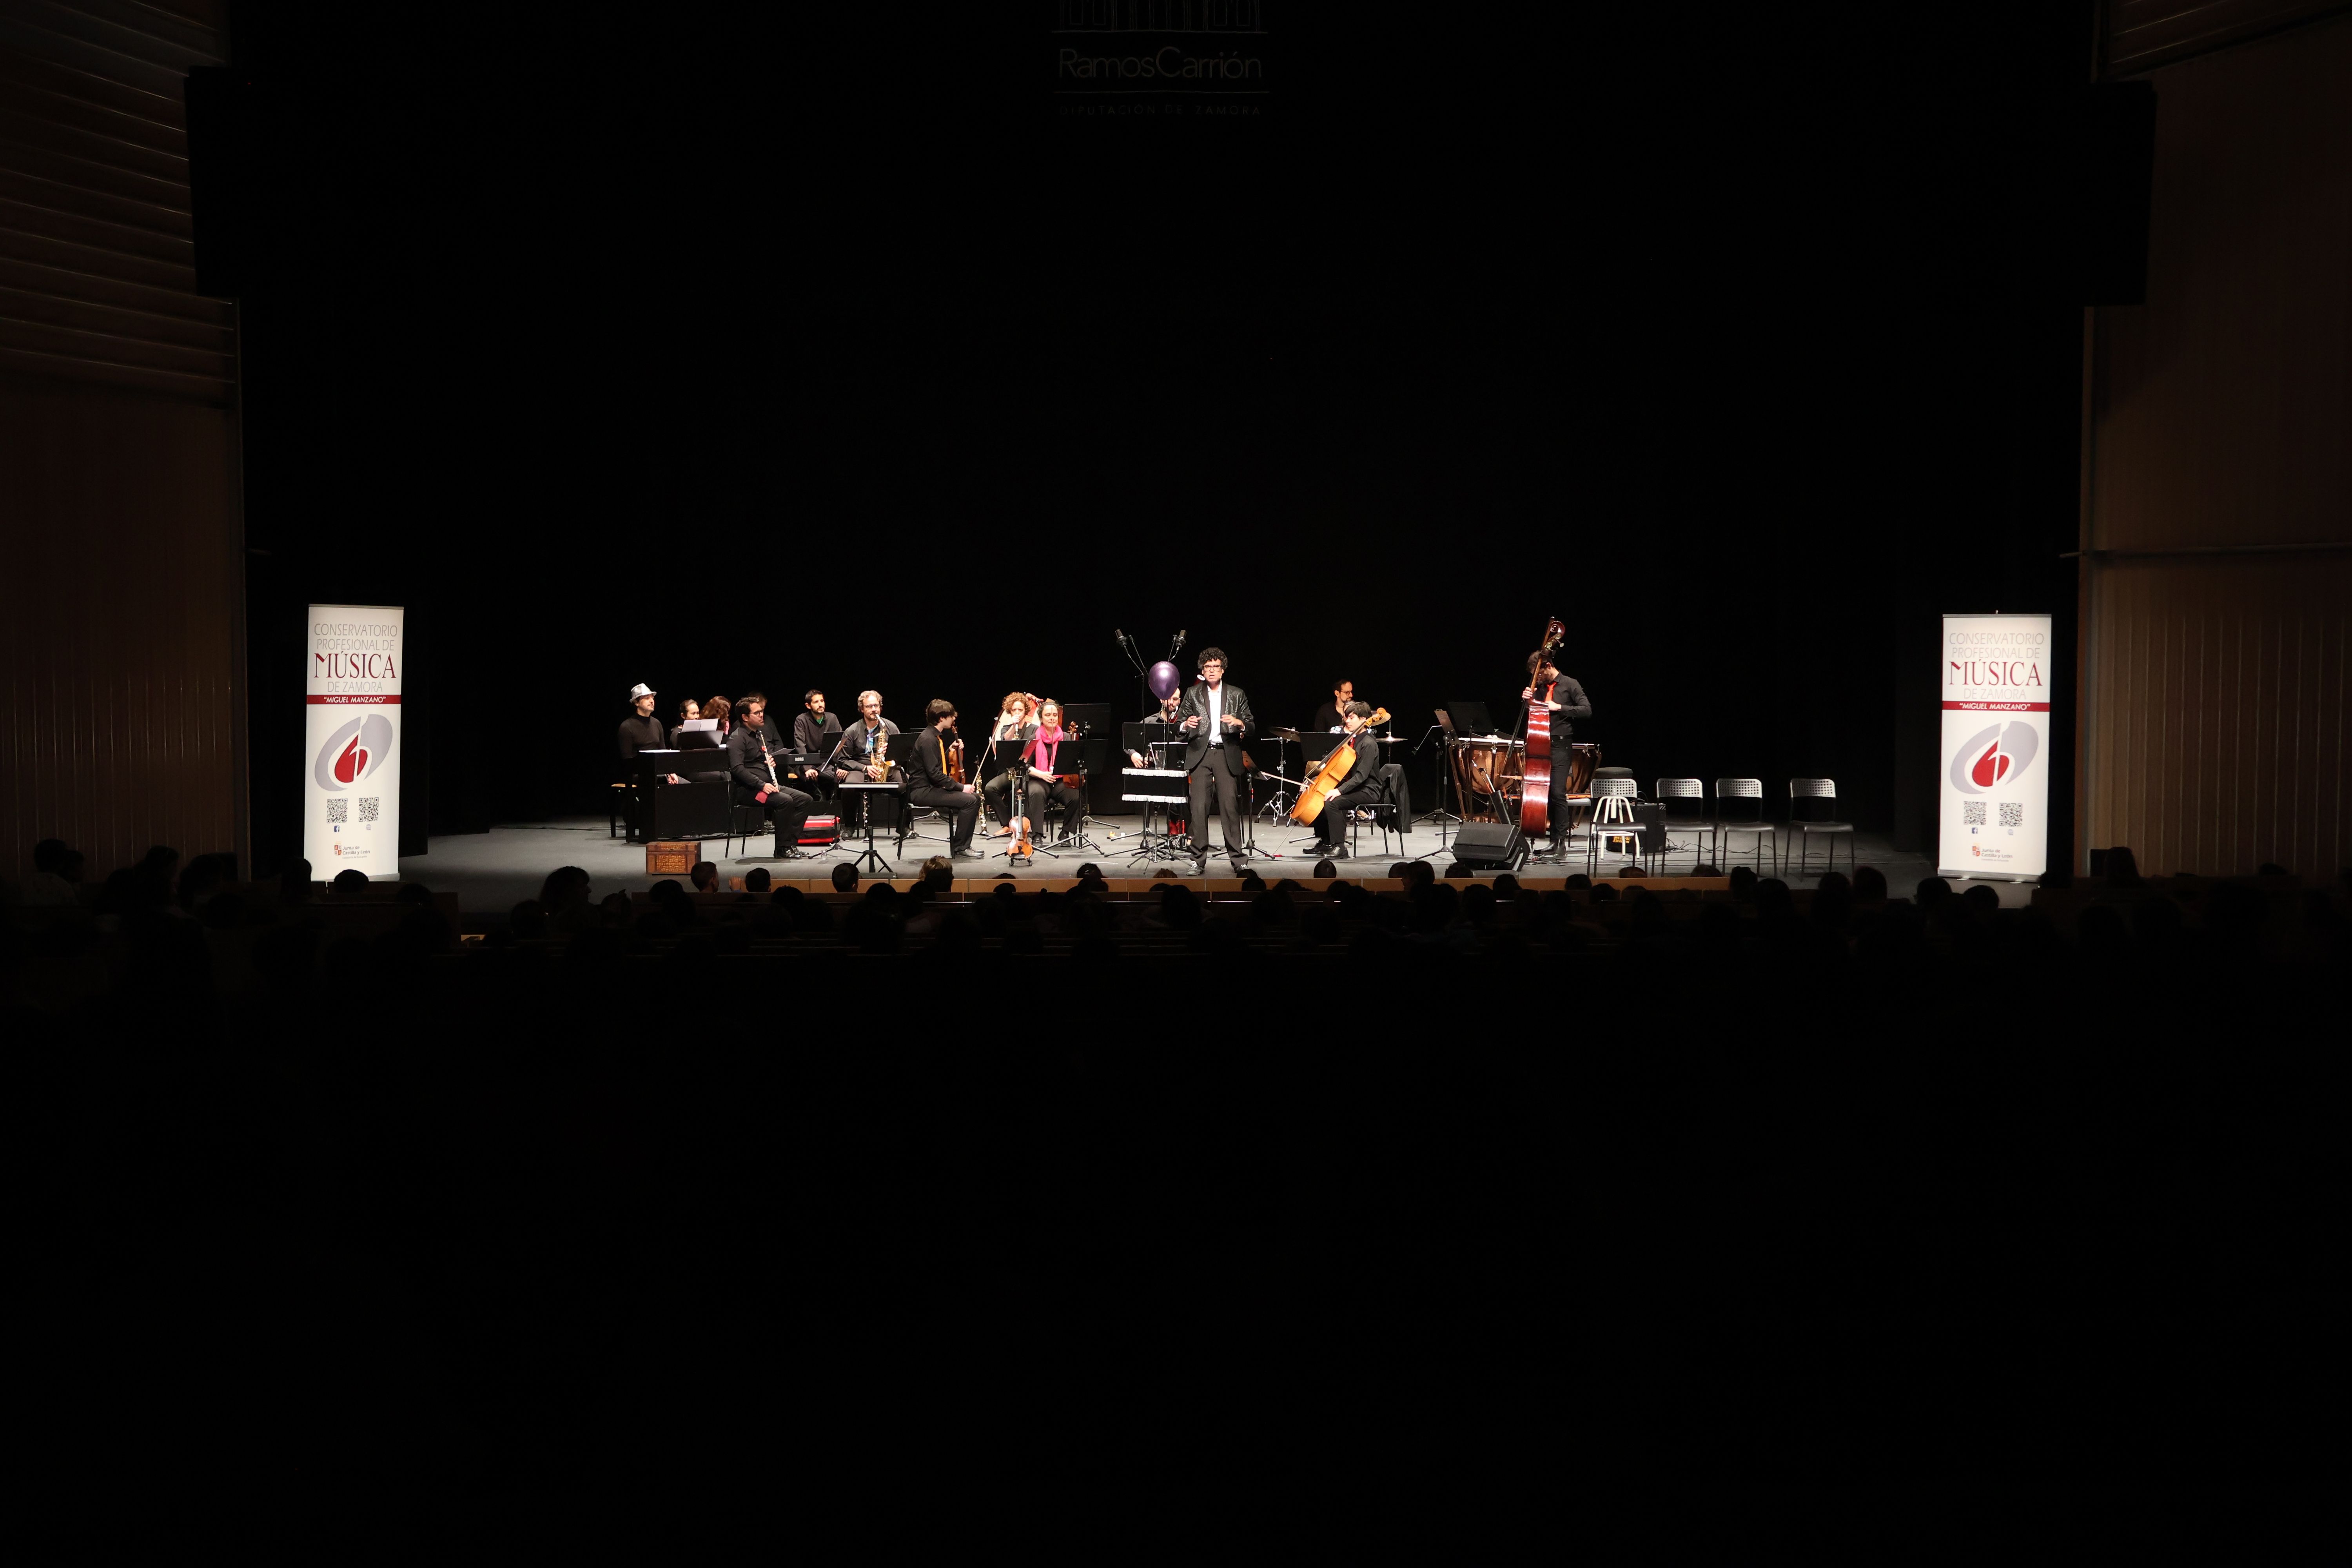 Concierto para escolares del Conservatorio de Música de Zamora